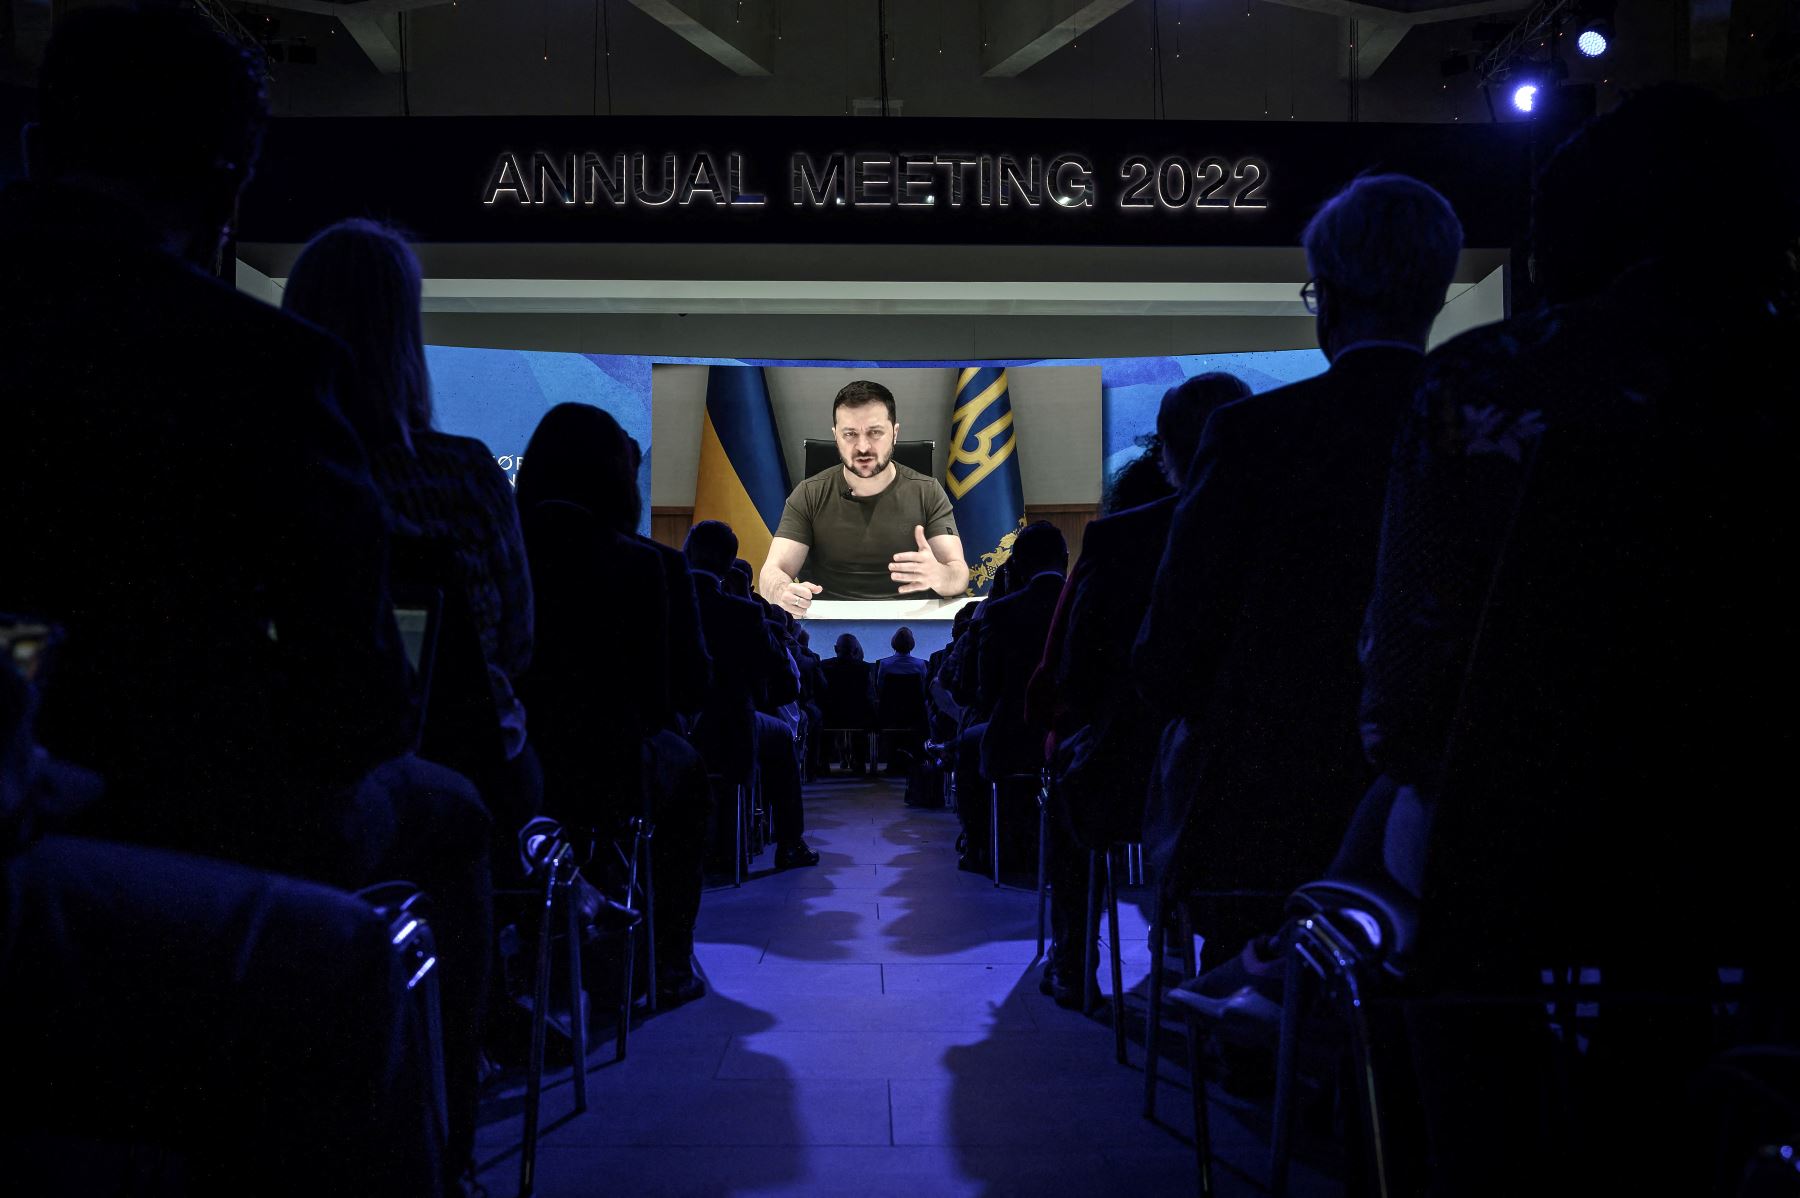 El presidente de Ucrania, Volodímir Zelenski, aparece en una pantalla gigante durante su discurso por videoconferencia como parte de la reunión anual del Foro Económico Mundial (FEM), en Davos, el 23 de mayo del 2022. Foto: AFP.